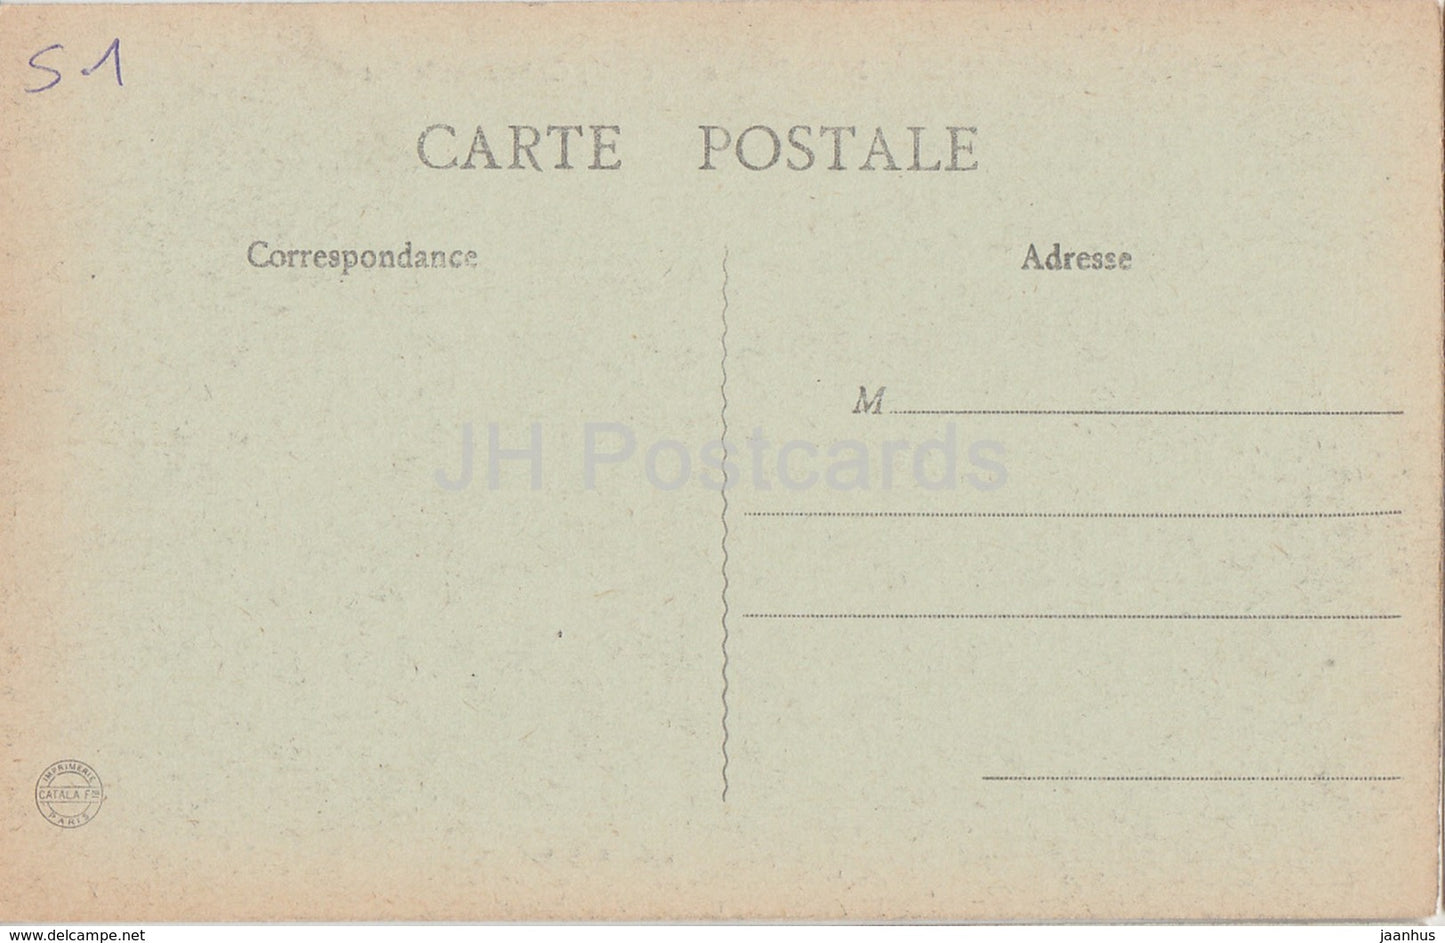 Boursault - Le Chateau et le Lac - castle - 16 - old postcard - France - unused